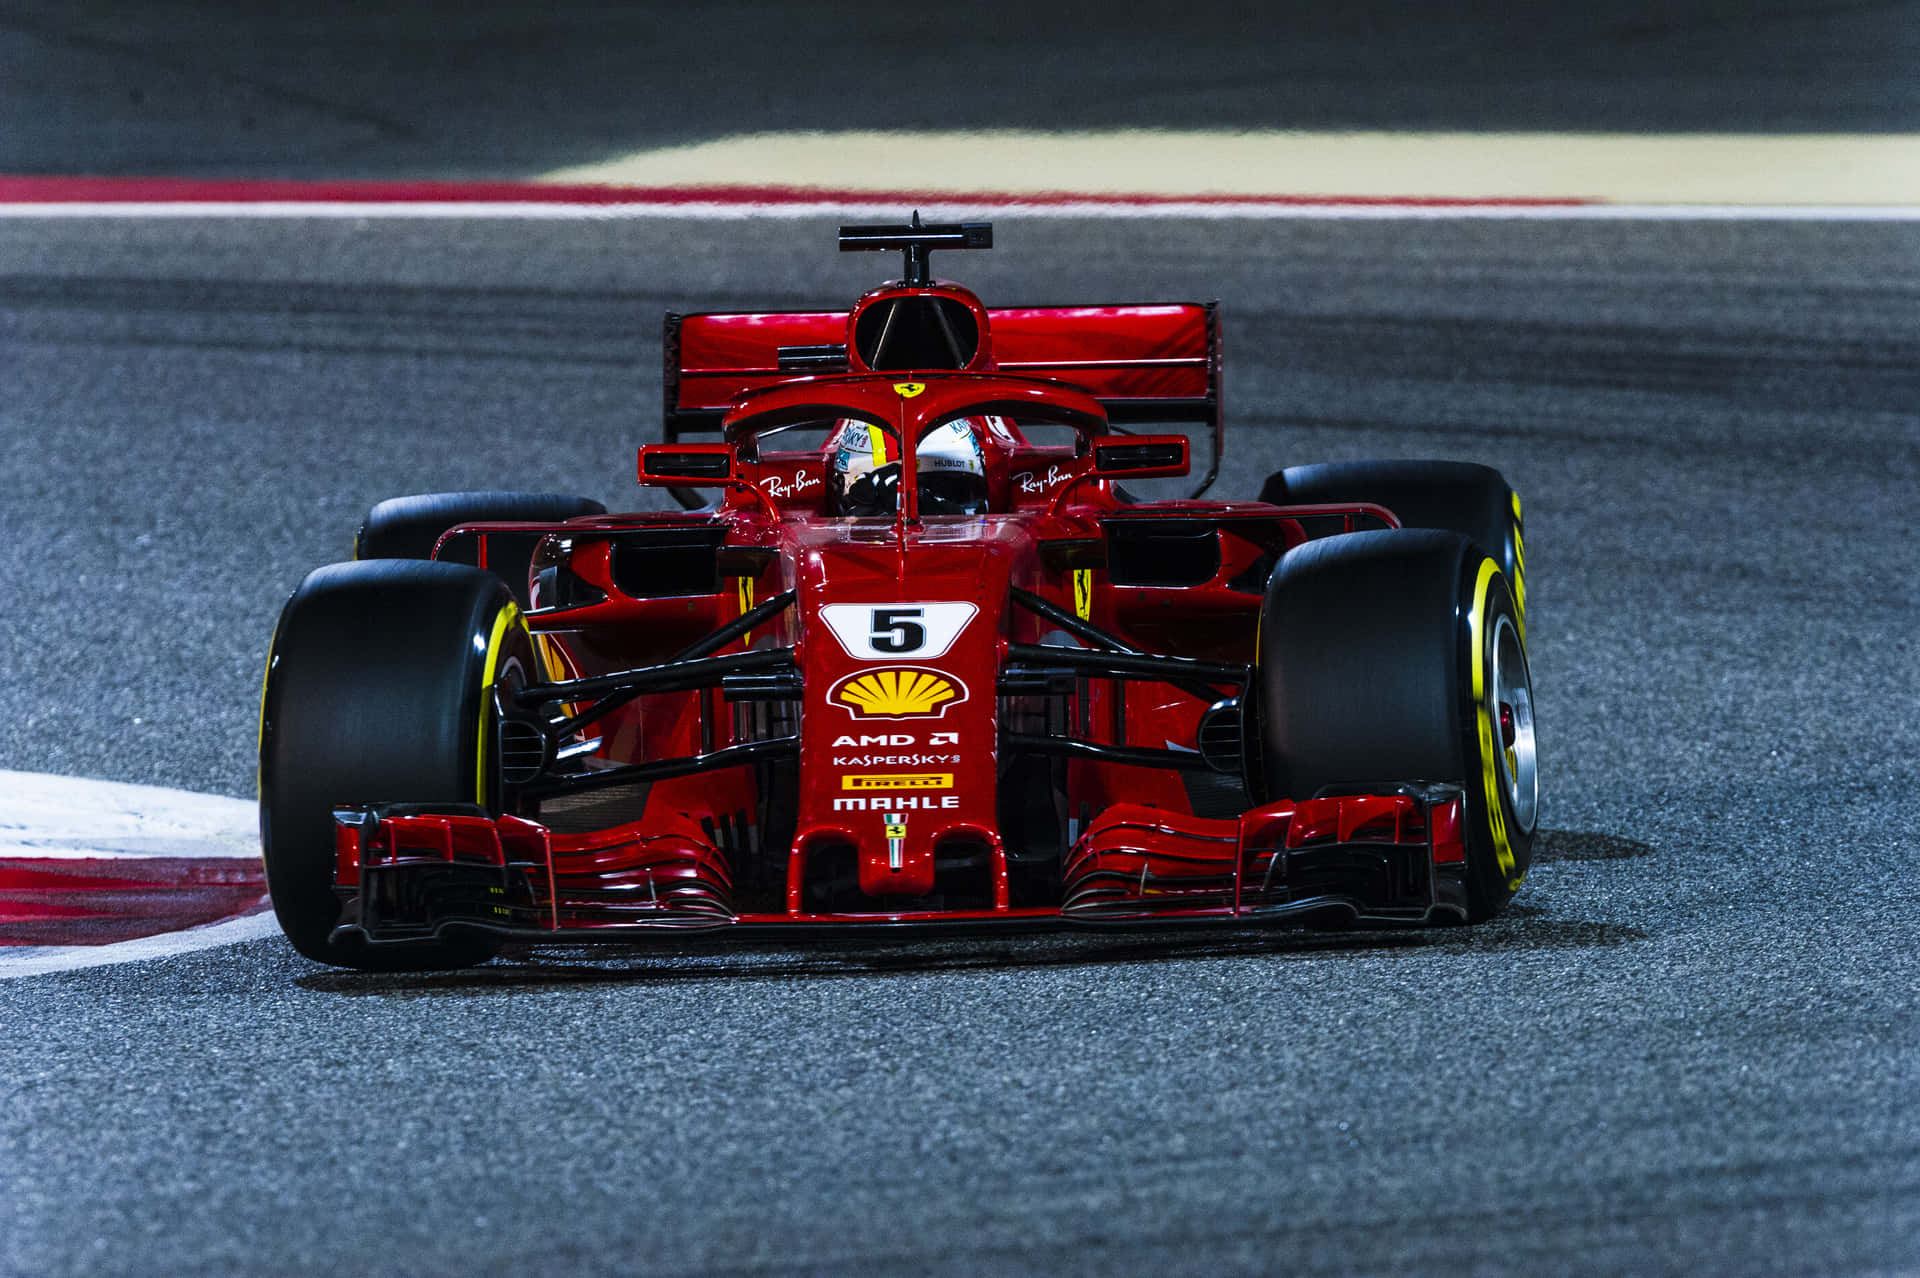 Fondode Pantalla De Vettel En El Ferrari Sf71h De Fórmula 1 2018